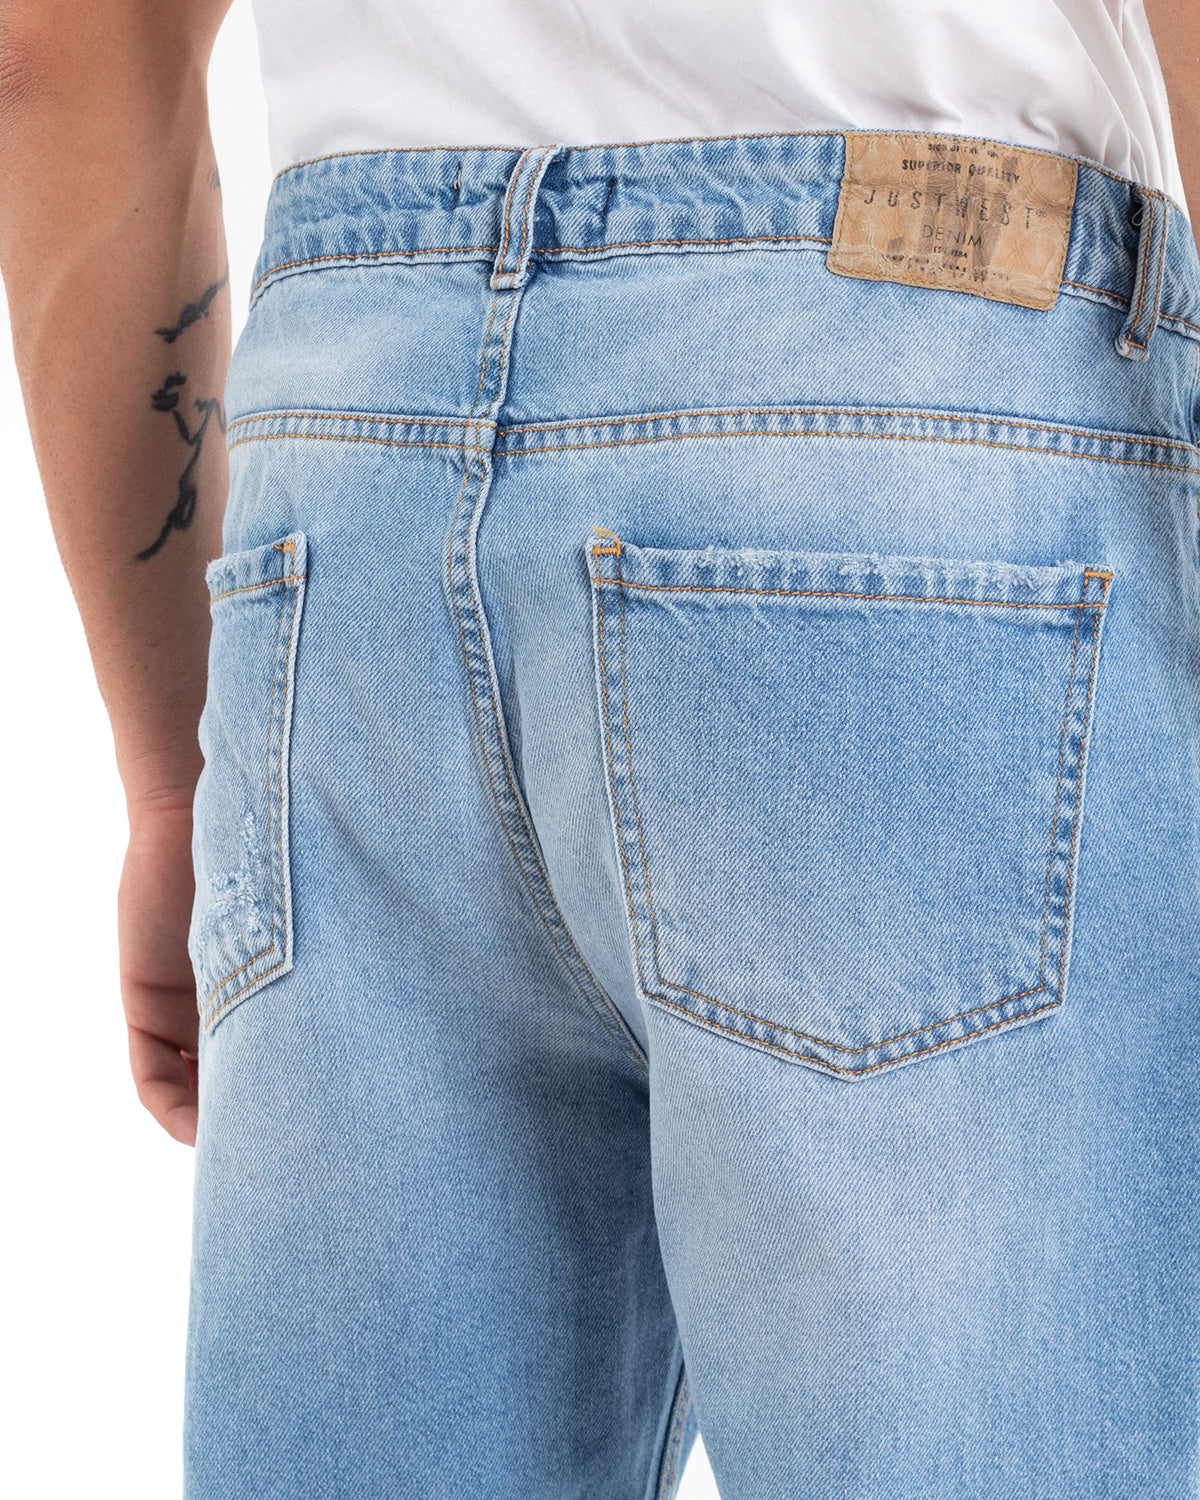 Pantaloni Jeans Uomo Loose Fit Denim Chiaro Cinque Tasche Casual GIOSAL-P5476A